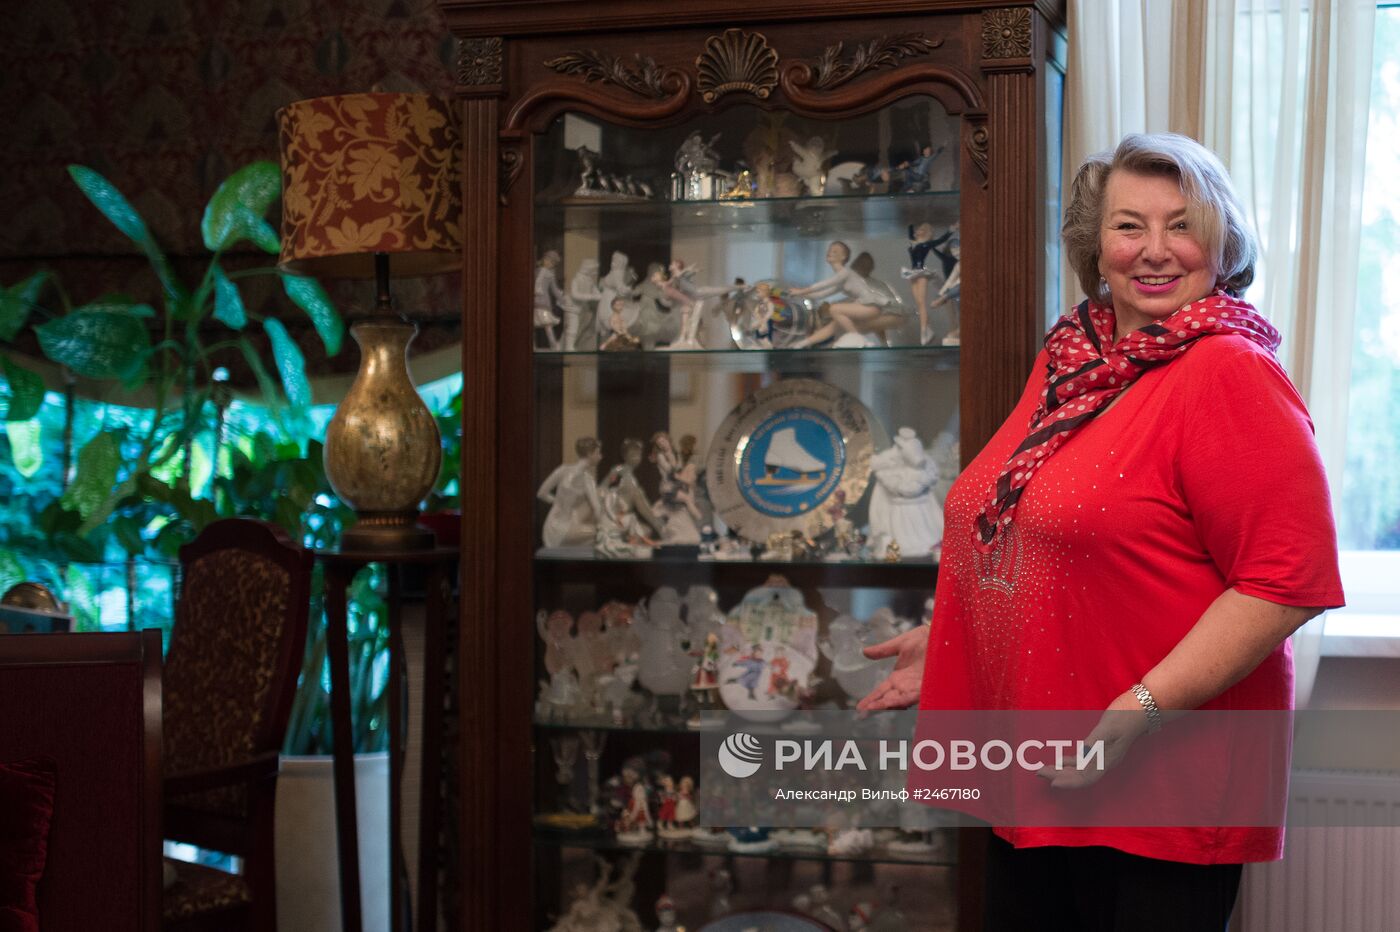 Тренер по фигурному катанию Татьяна Тарасова в своем доме в Подмосковье